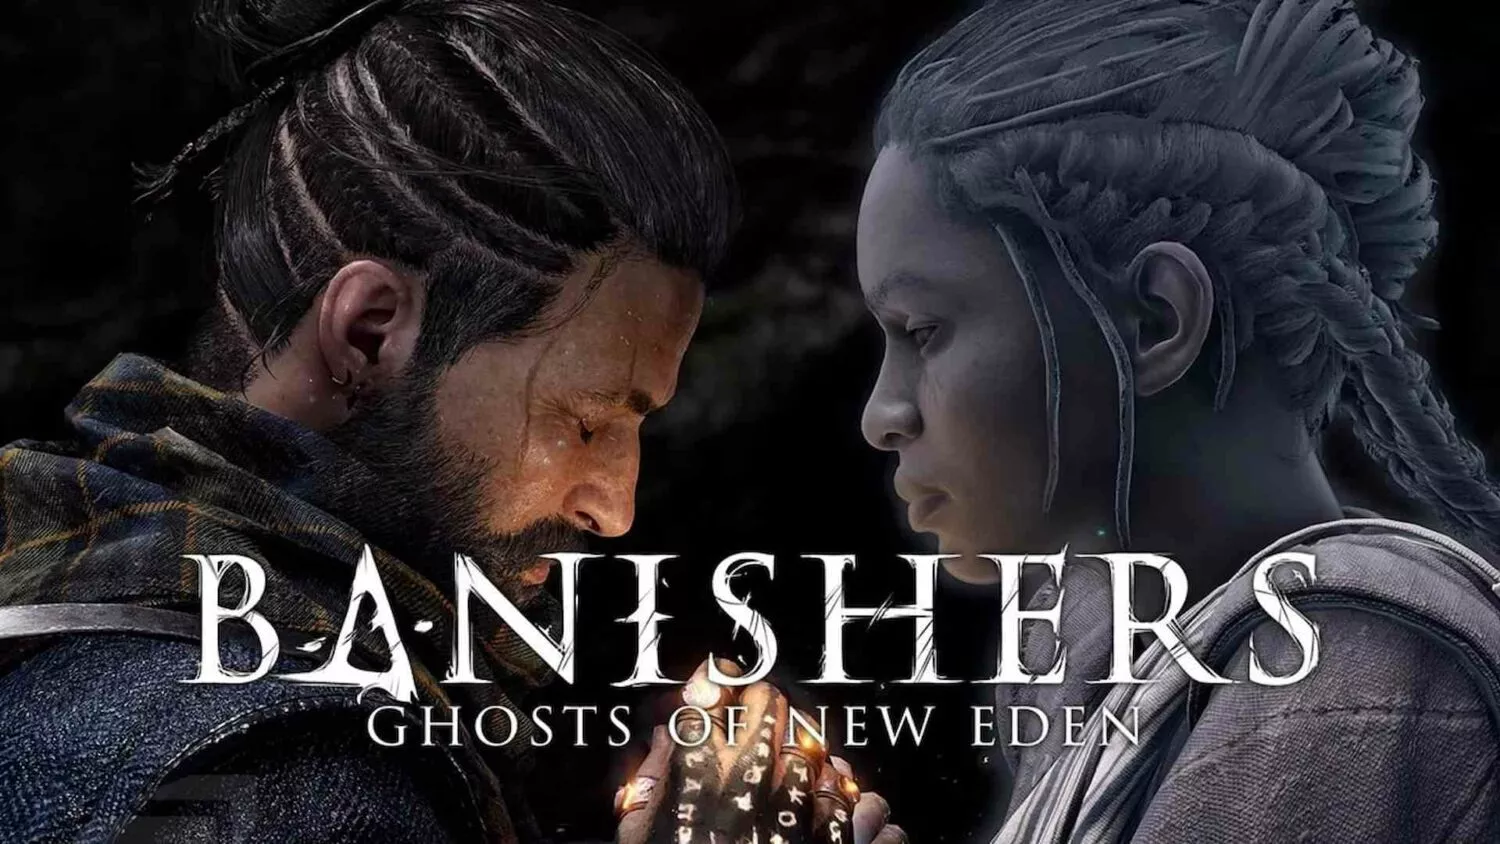 Launch-Trailer zu Banishers: Ghosts of New Eden veröffentlicht Heropic